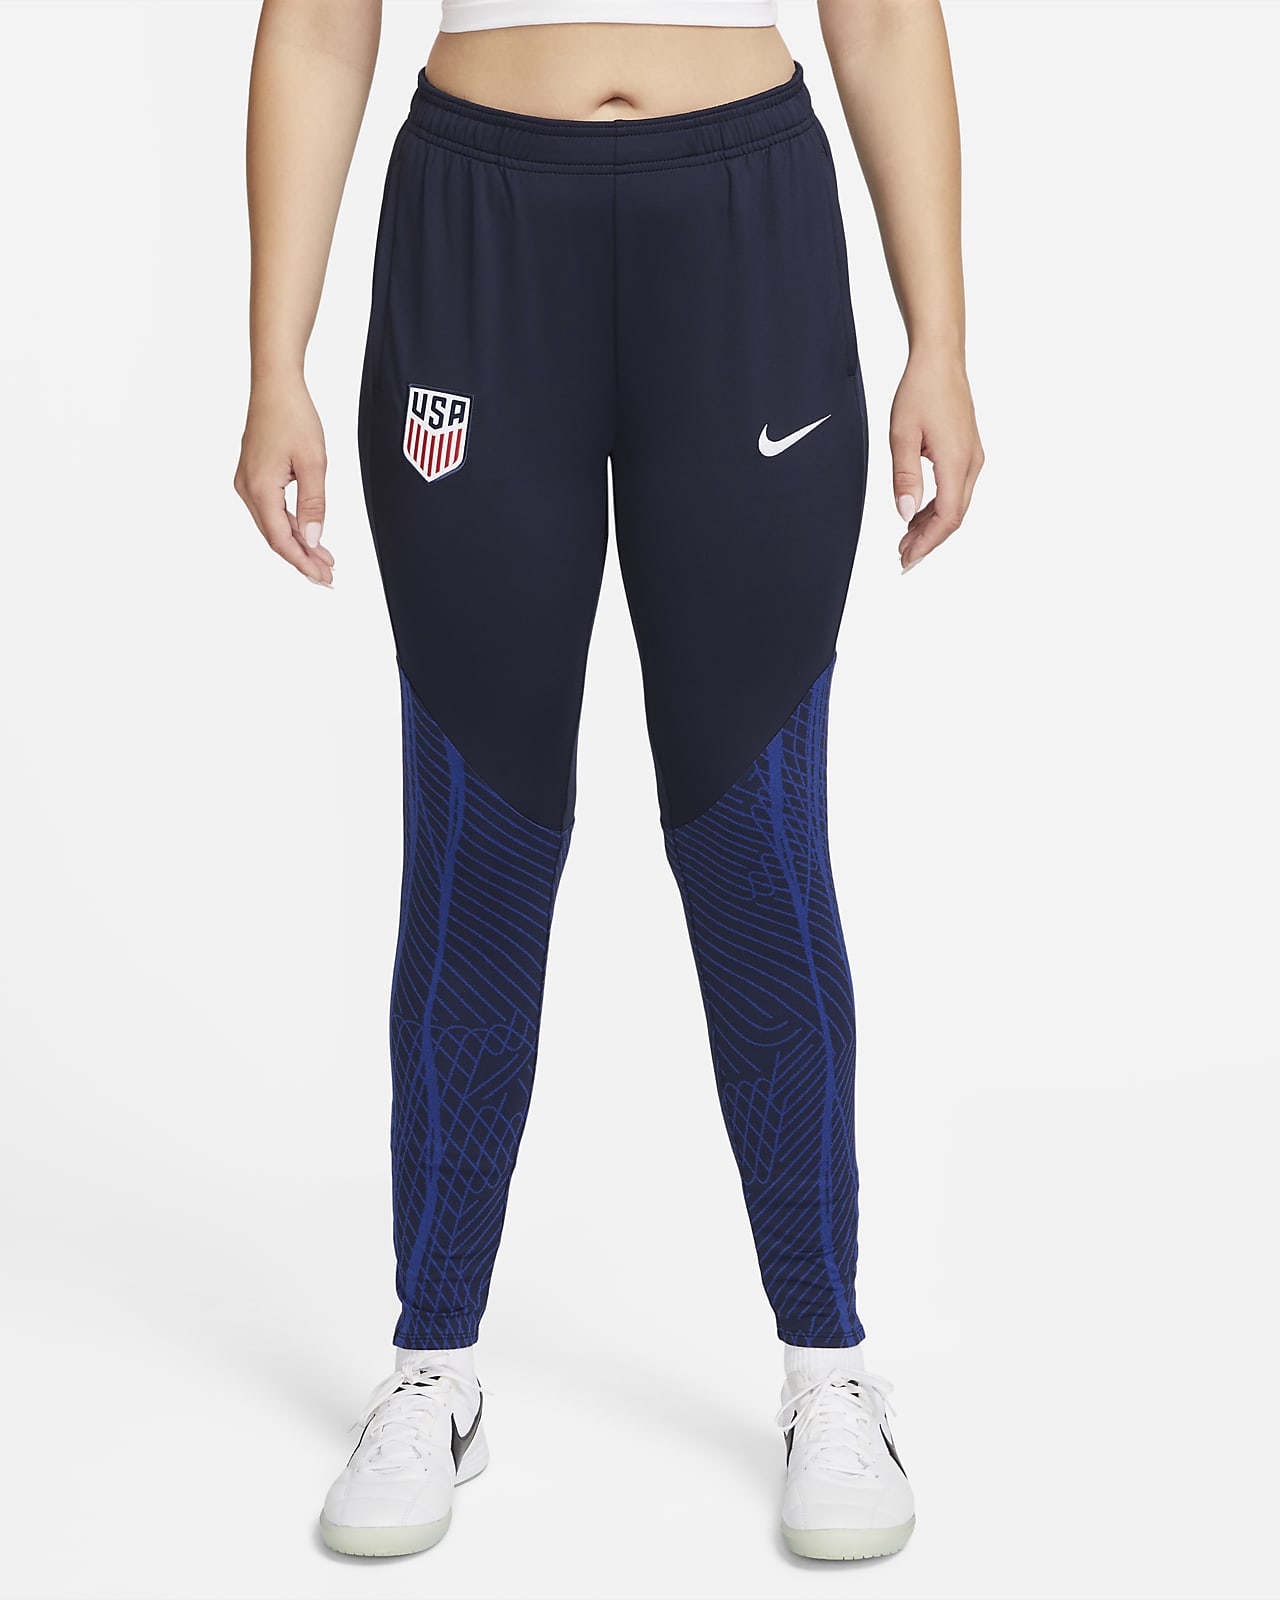 U.S. Strike Women's Nike Dri-FIT Knit Soccer Drill Top.